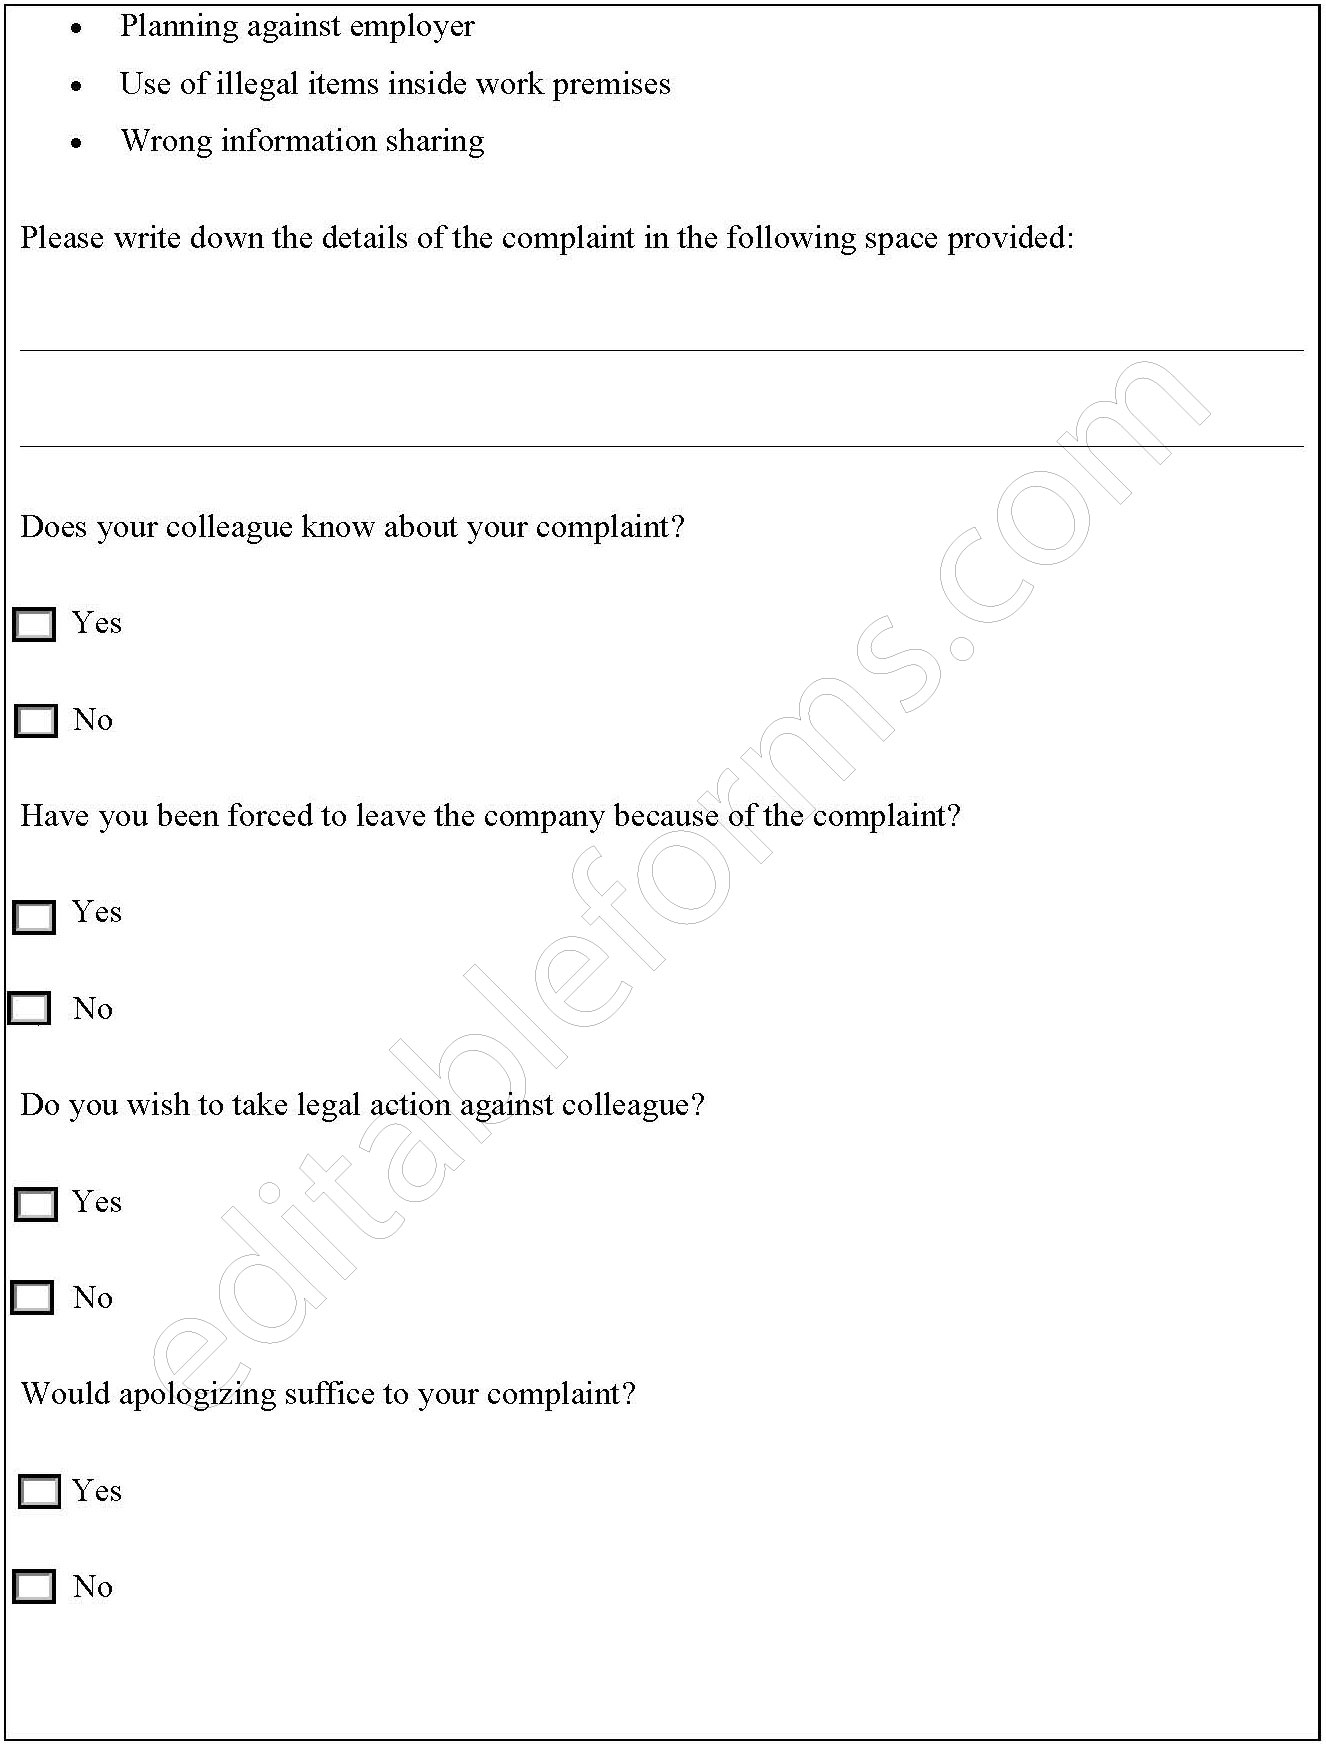 Colleague Complaint Form